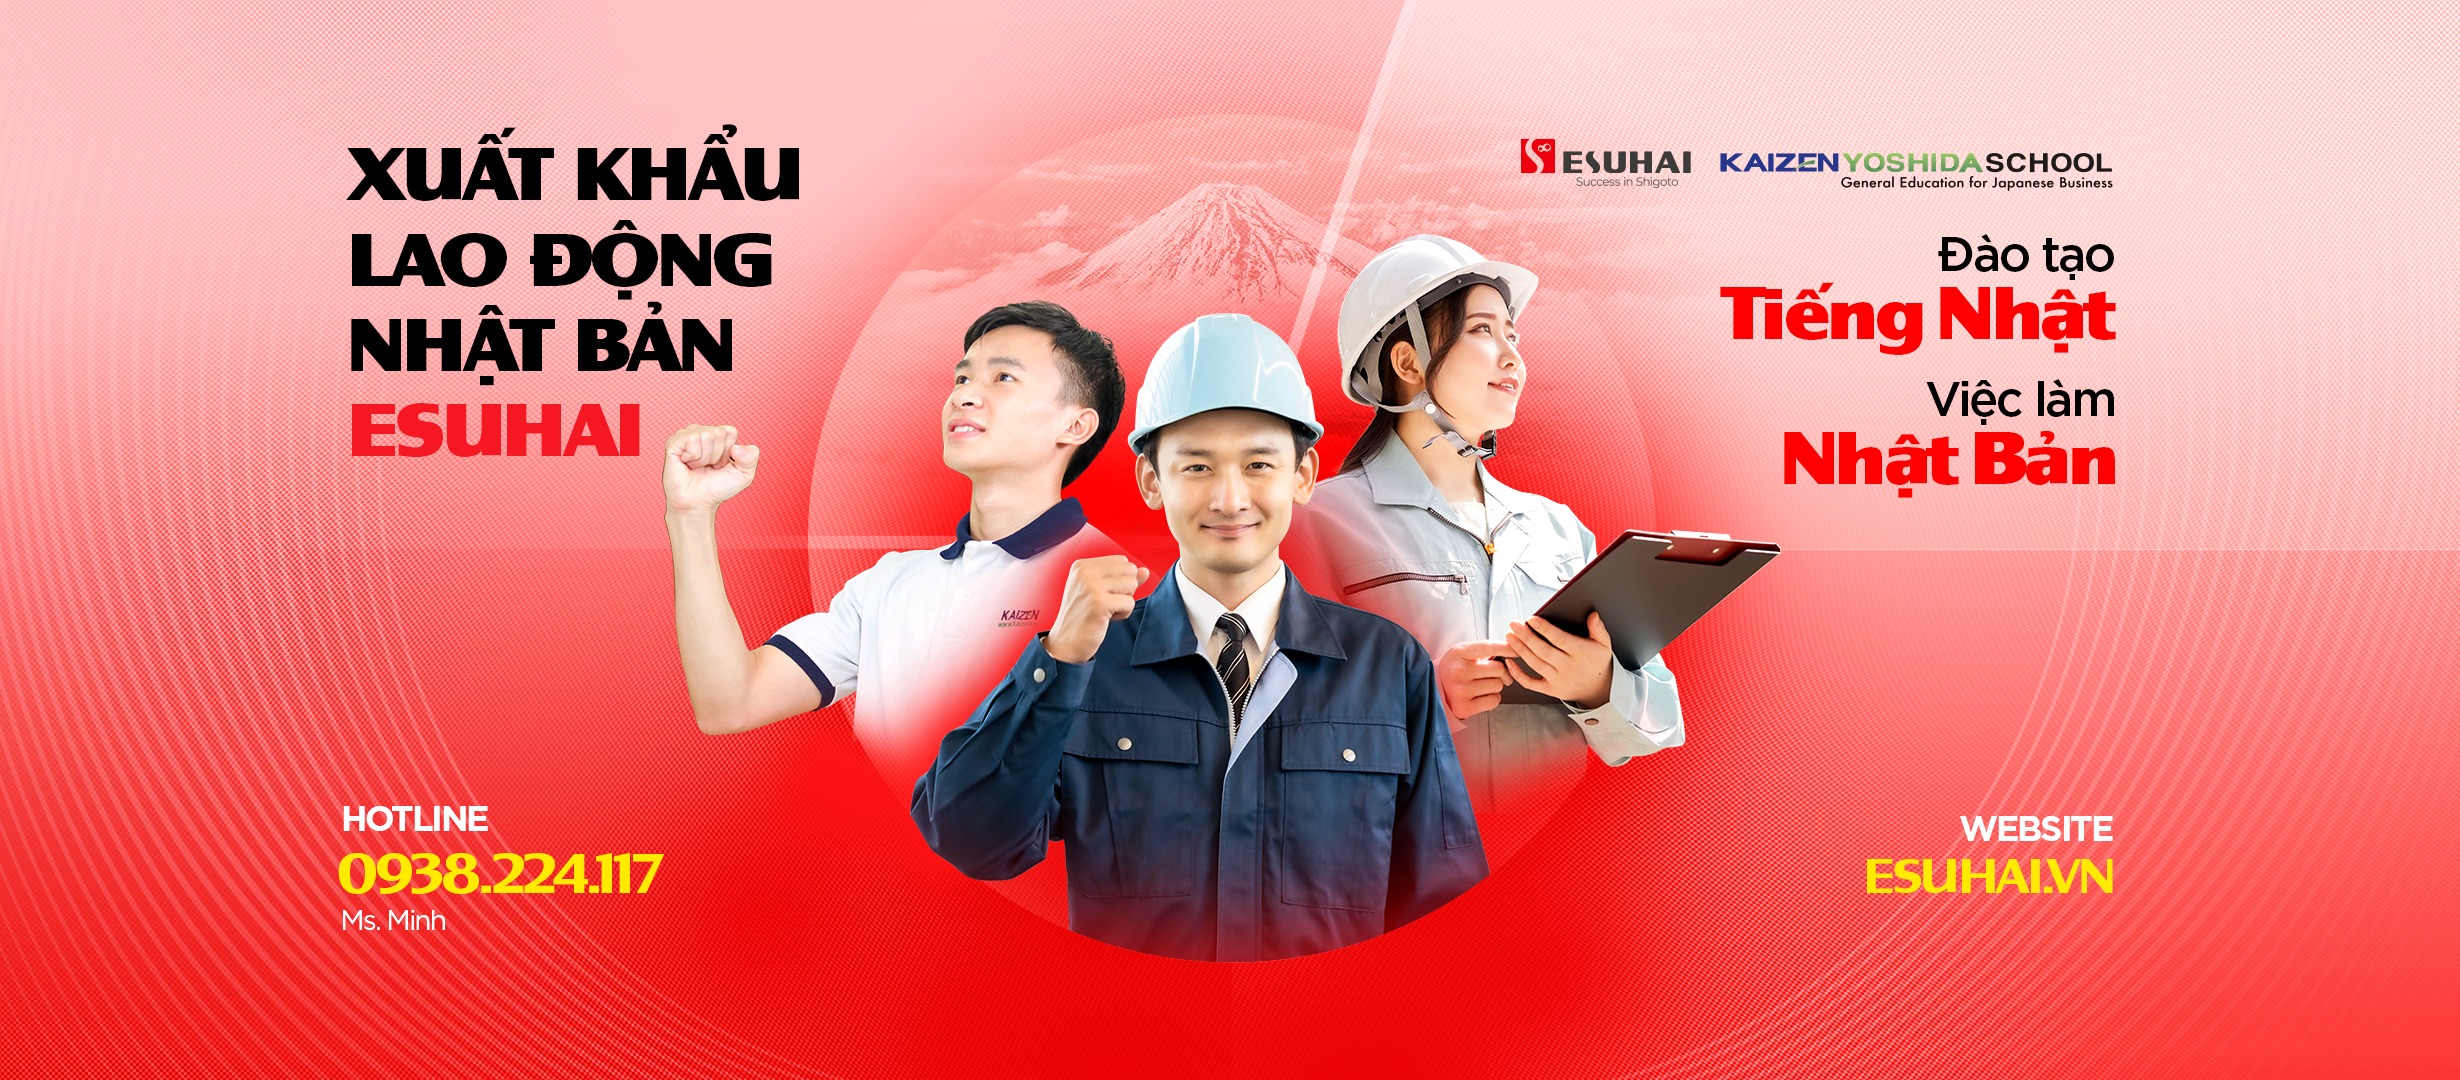 Esuhai - Công ty xuất khẩu lao động sang Nhật Bản hàng đầu 